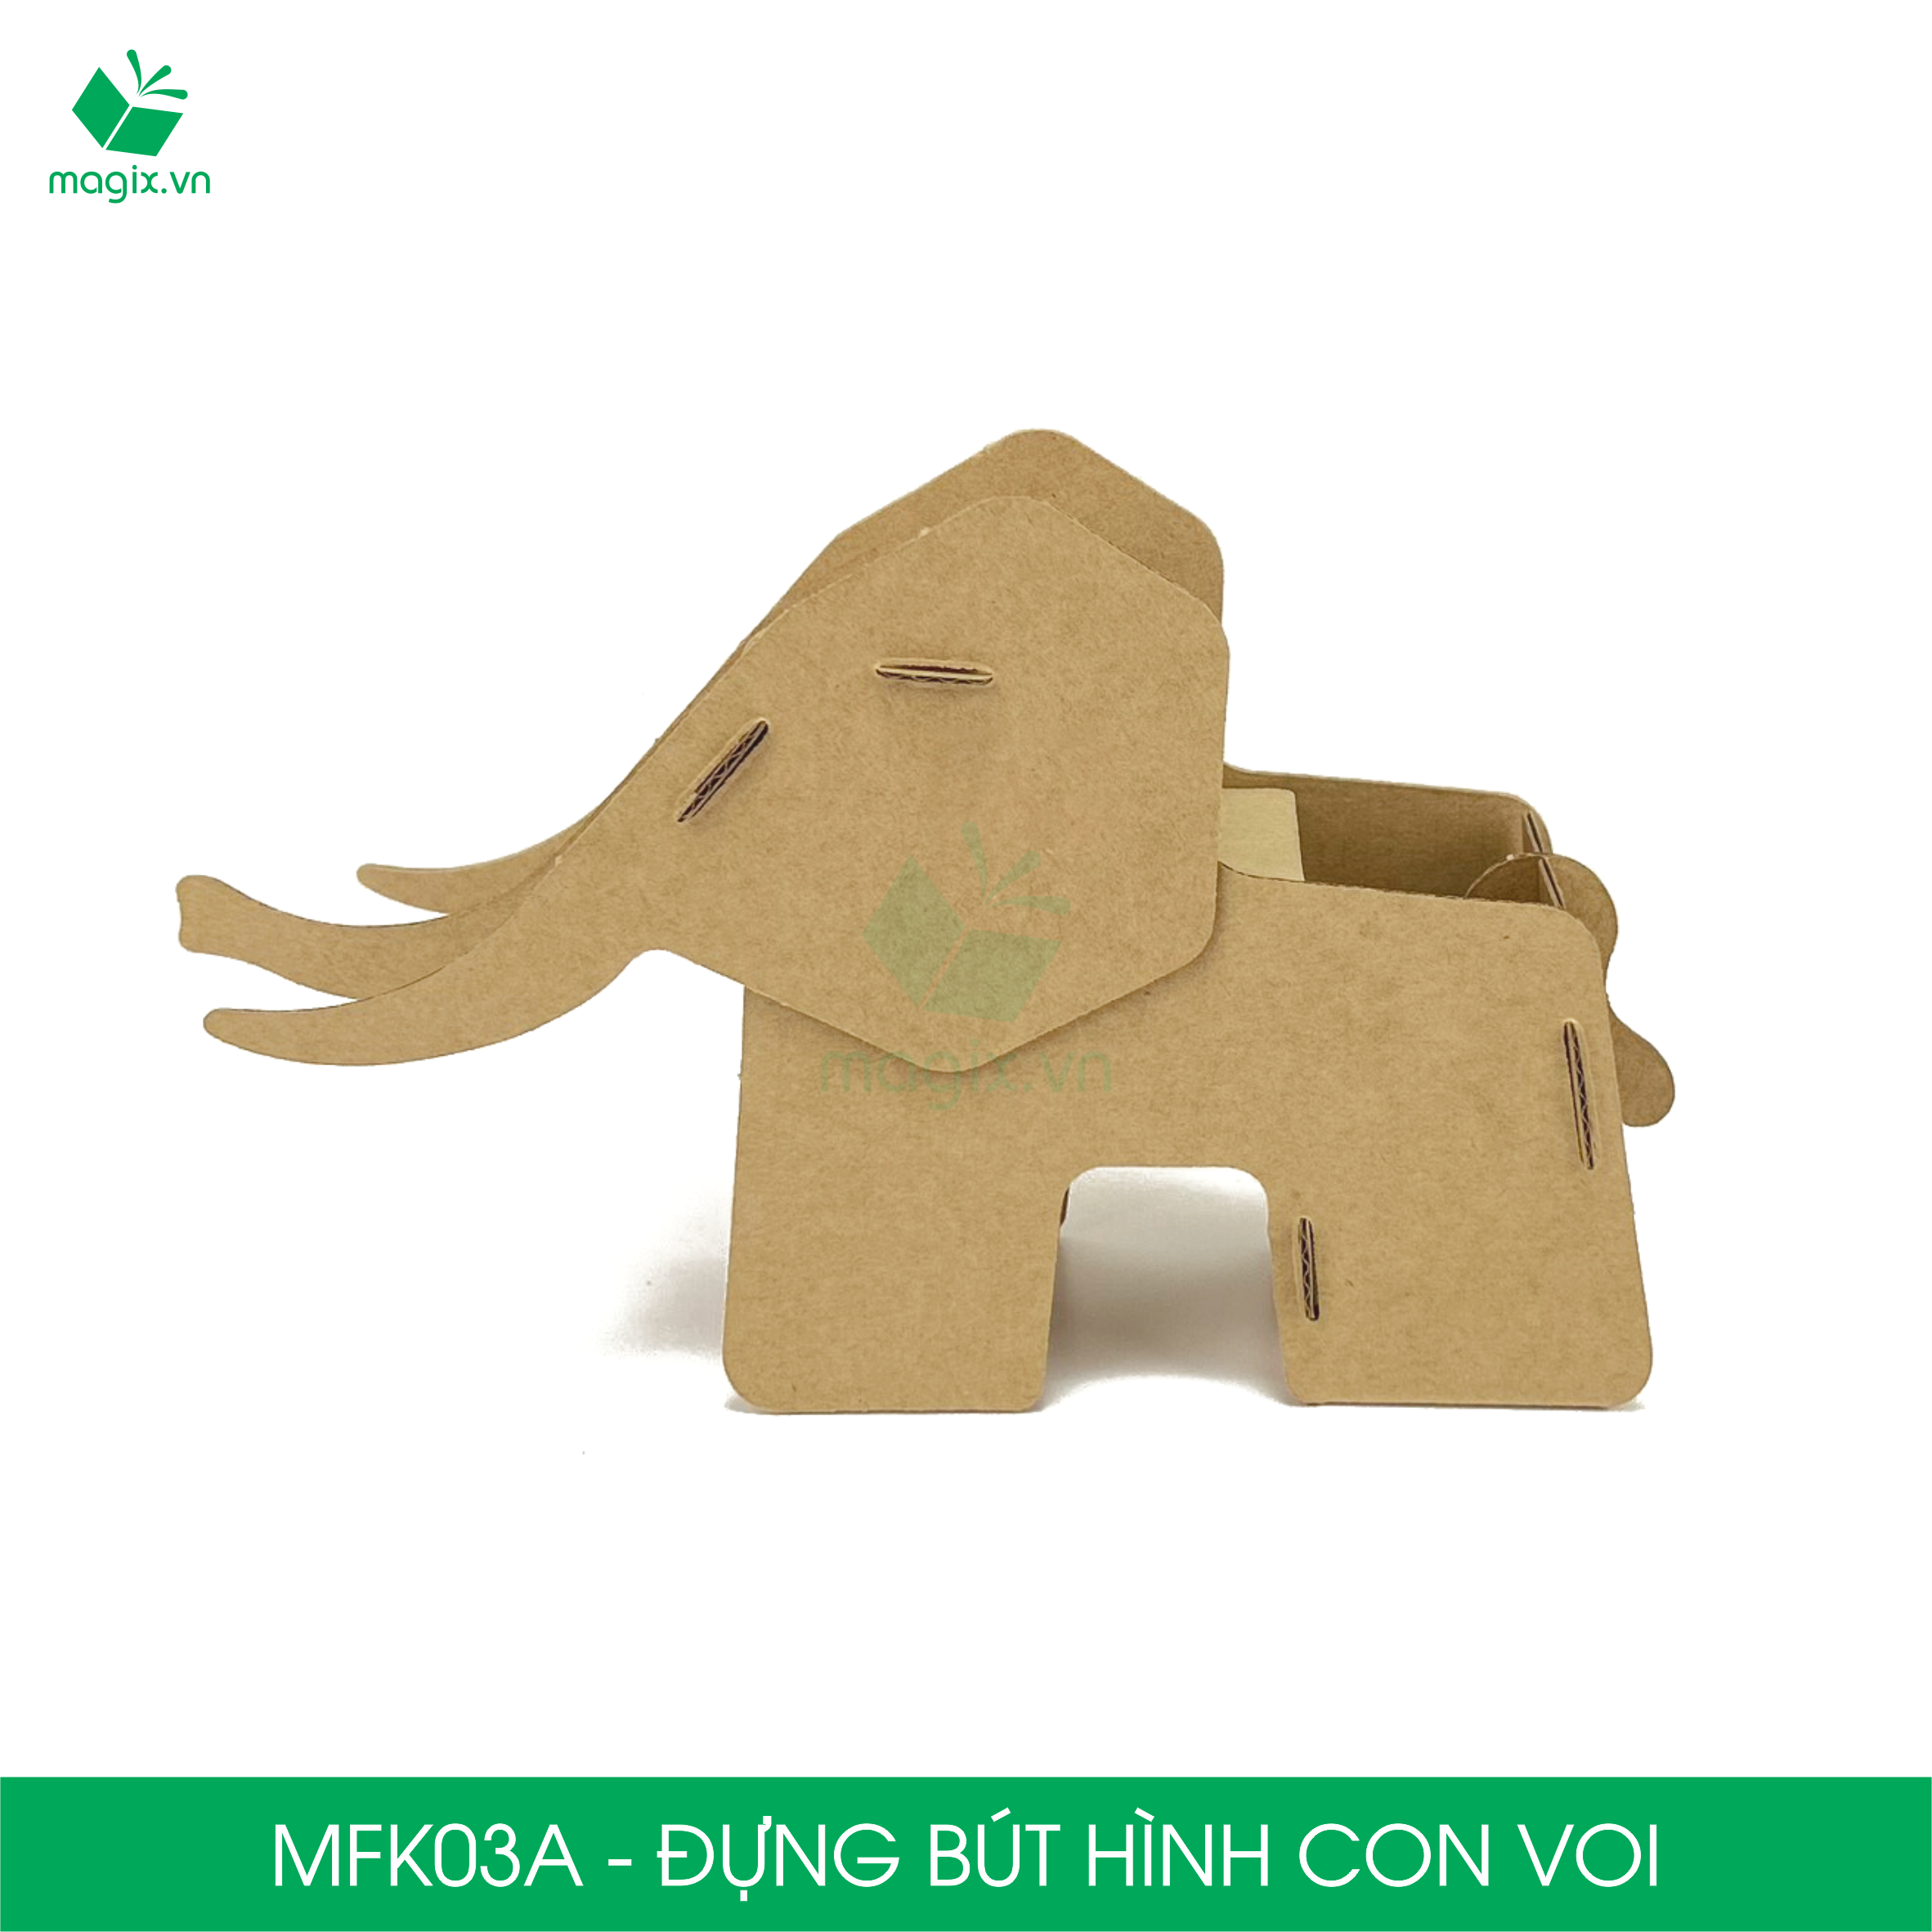 MFK03A - Đựng bút lắp ráp hình con voi, đồ đựng bút hình thú bằng giấy carton siêu cứng